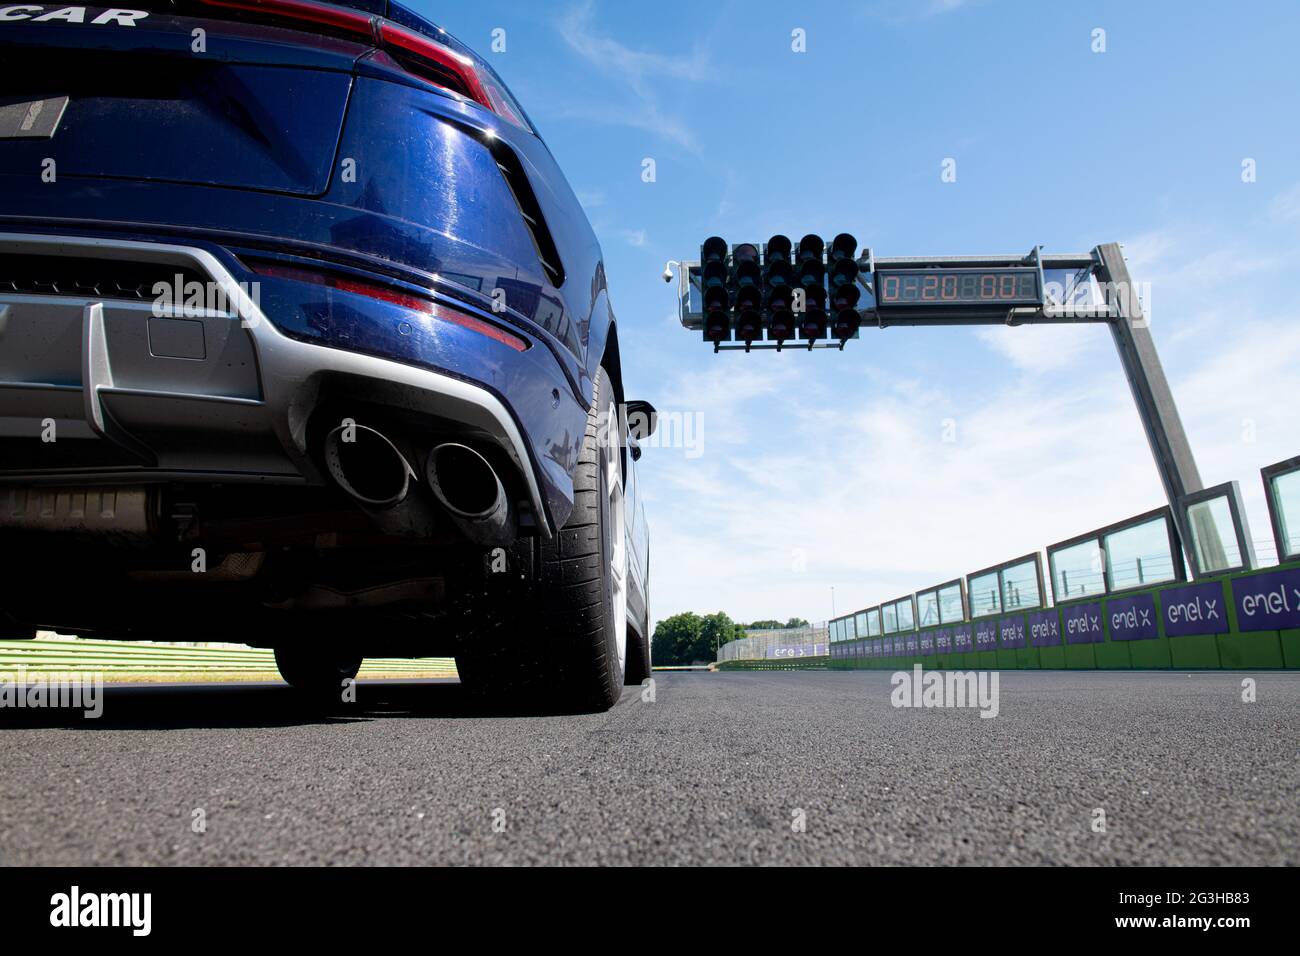 Vallelunga giugno 13 2021, serie Fx Racing. Lamborghini safety car sul circuito asfalto linea di partenza, vista in piano Foto Stock